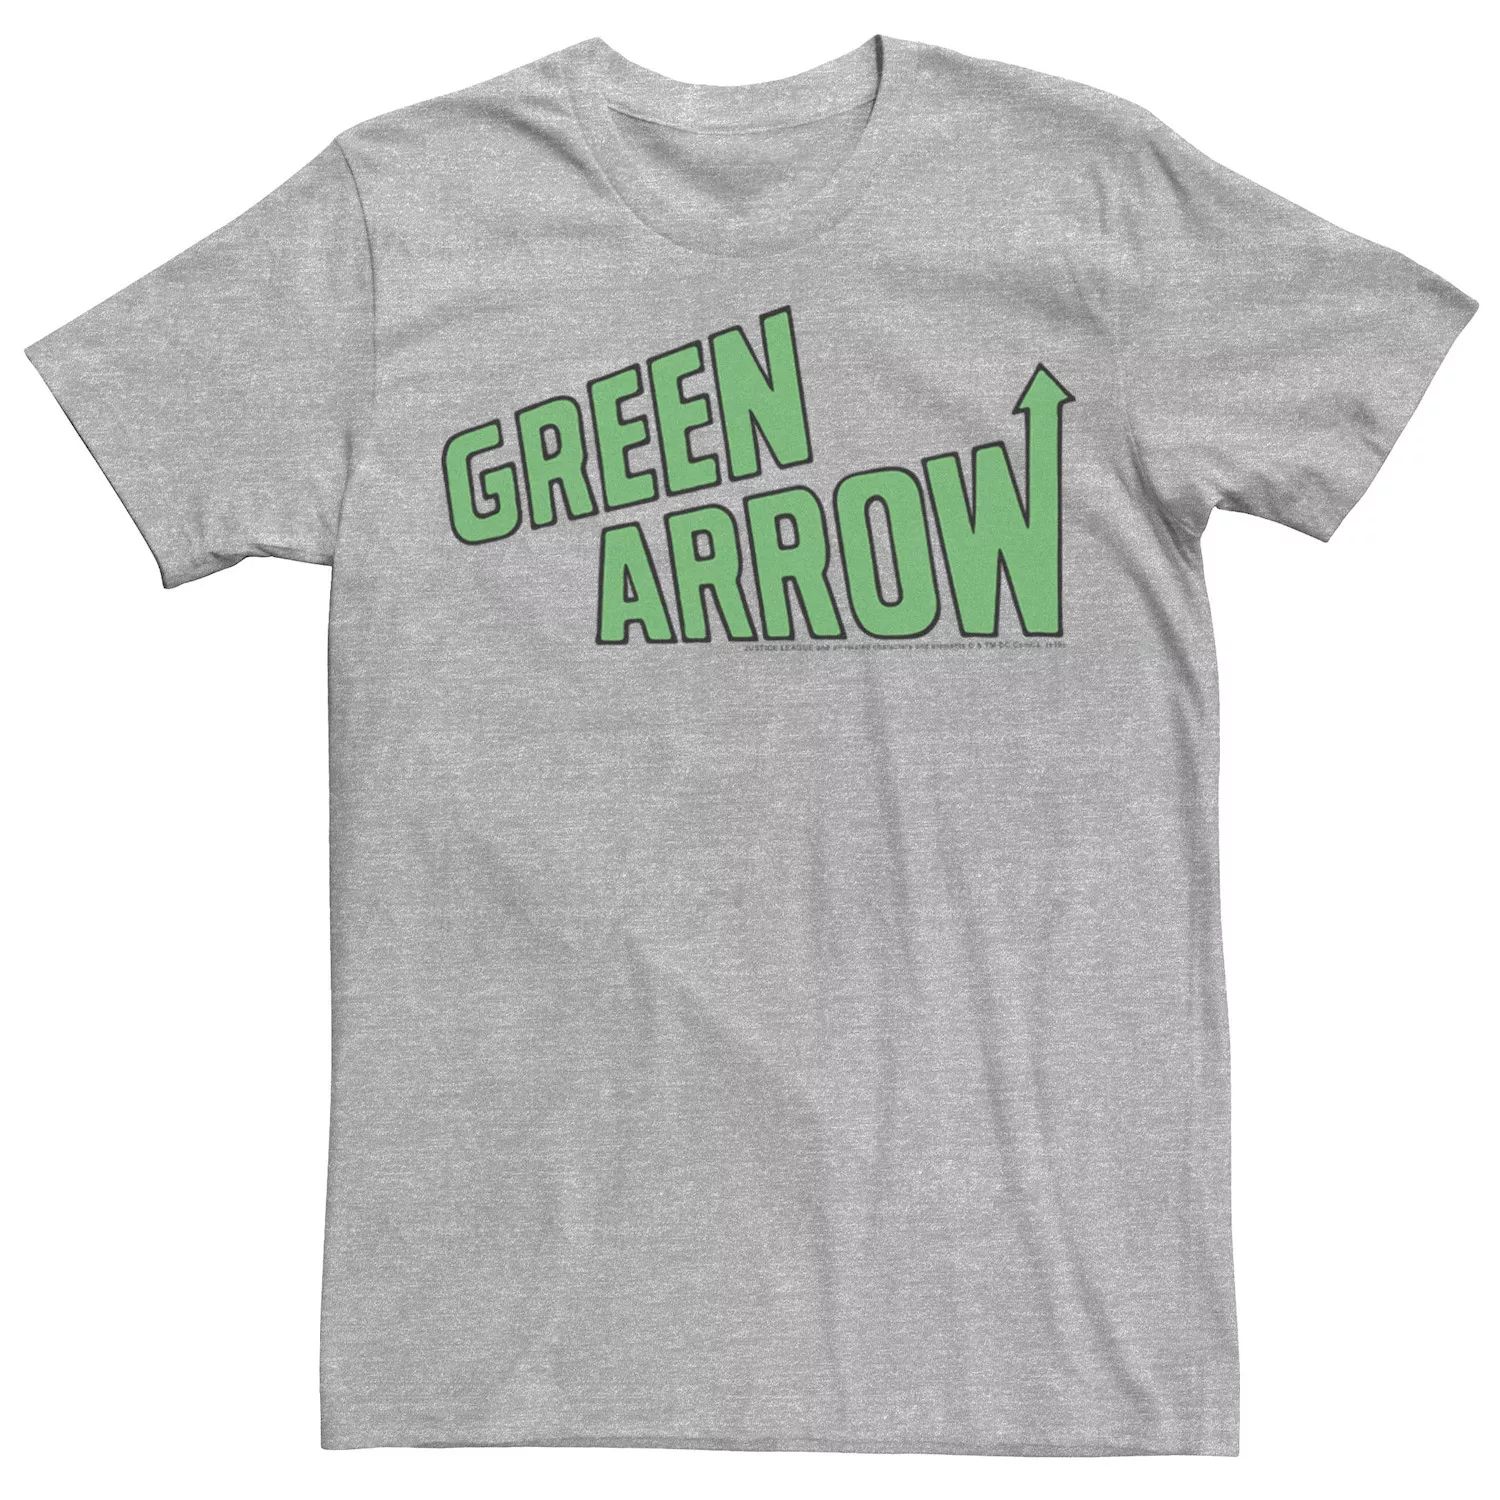 цена Мужская футболка с надписью Green Arrow и плакатом DC Comics